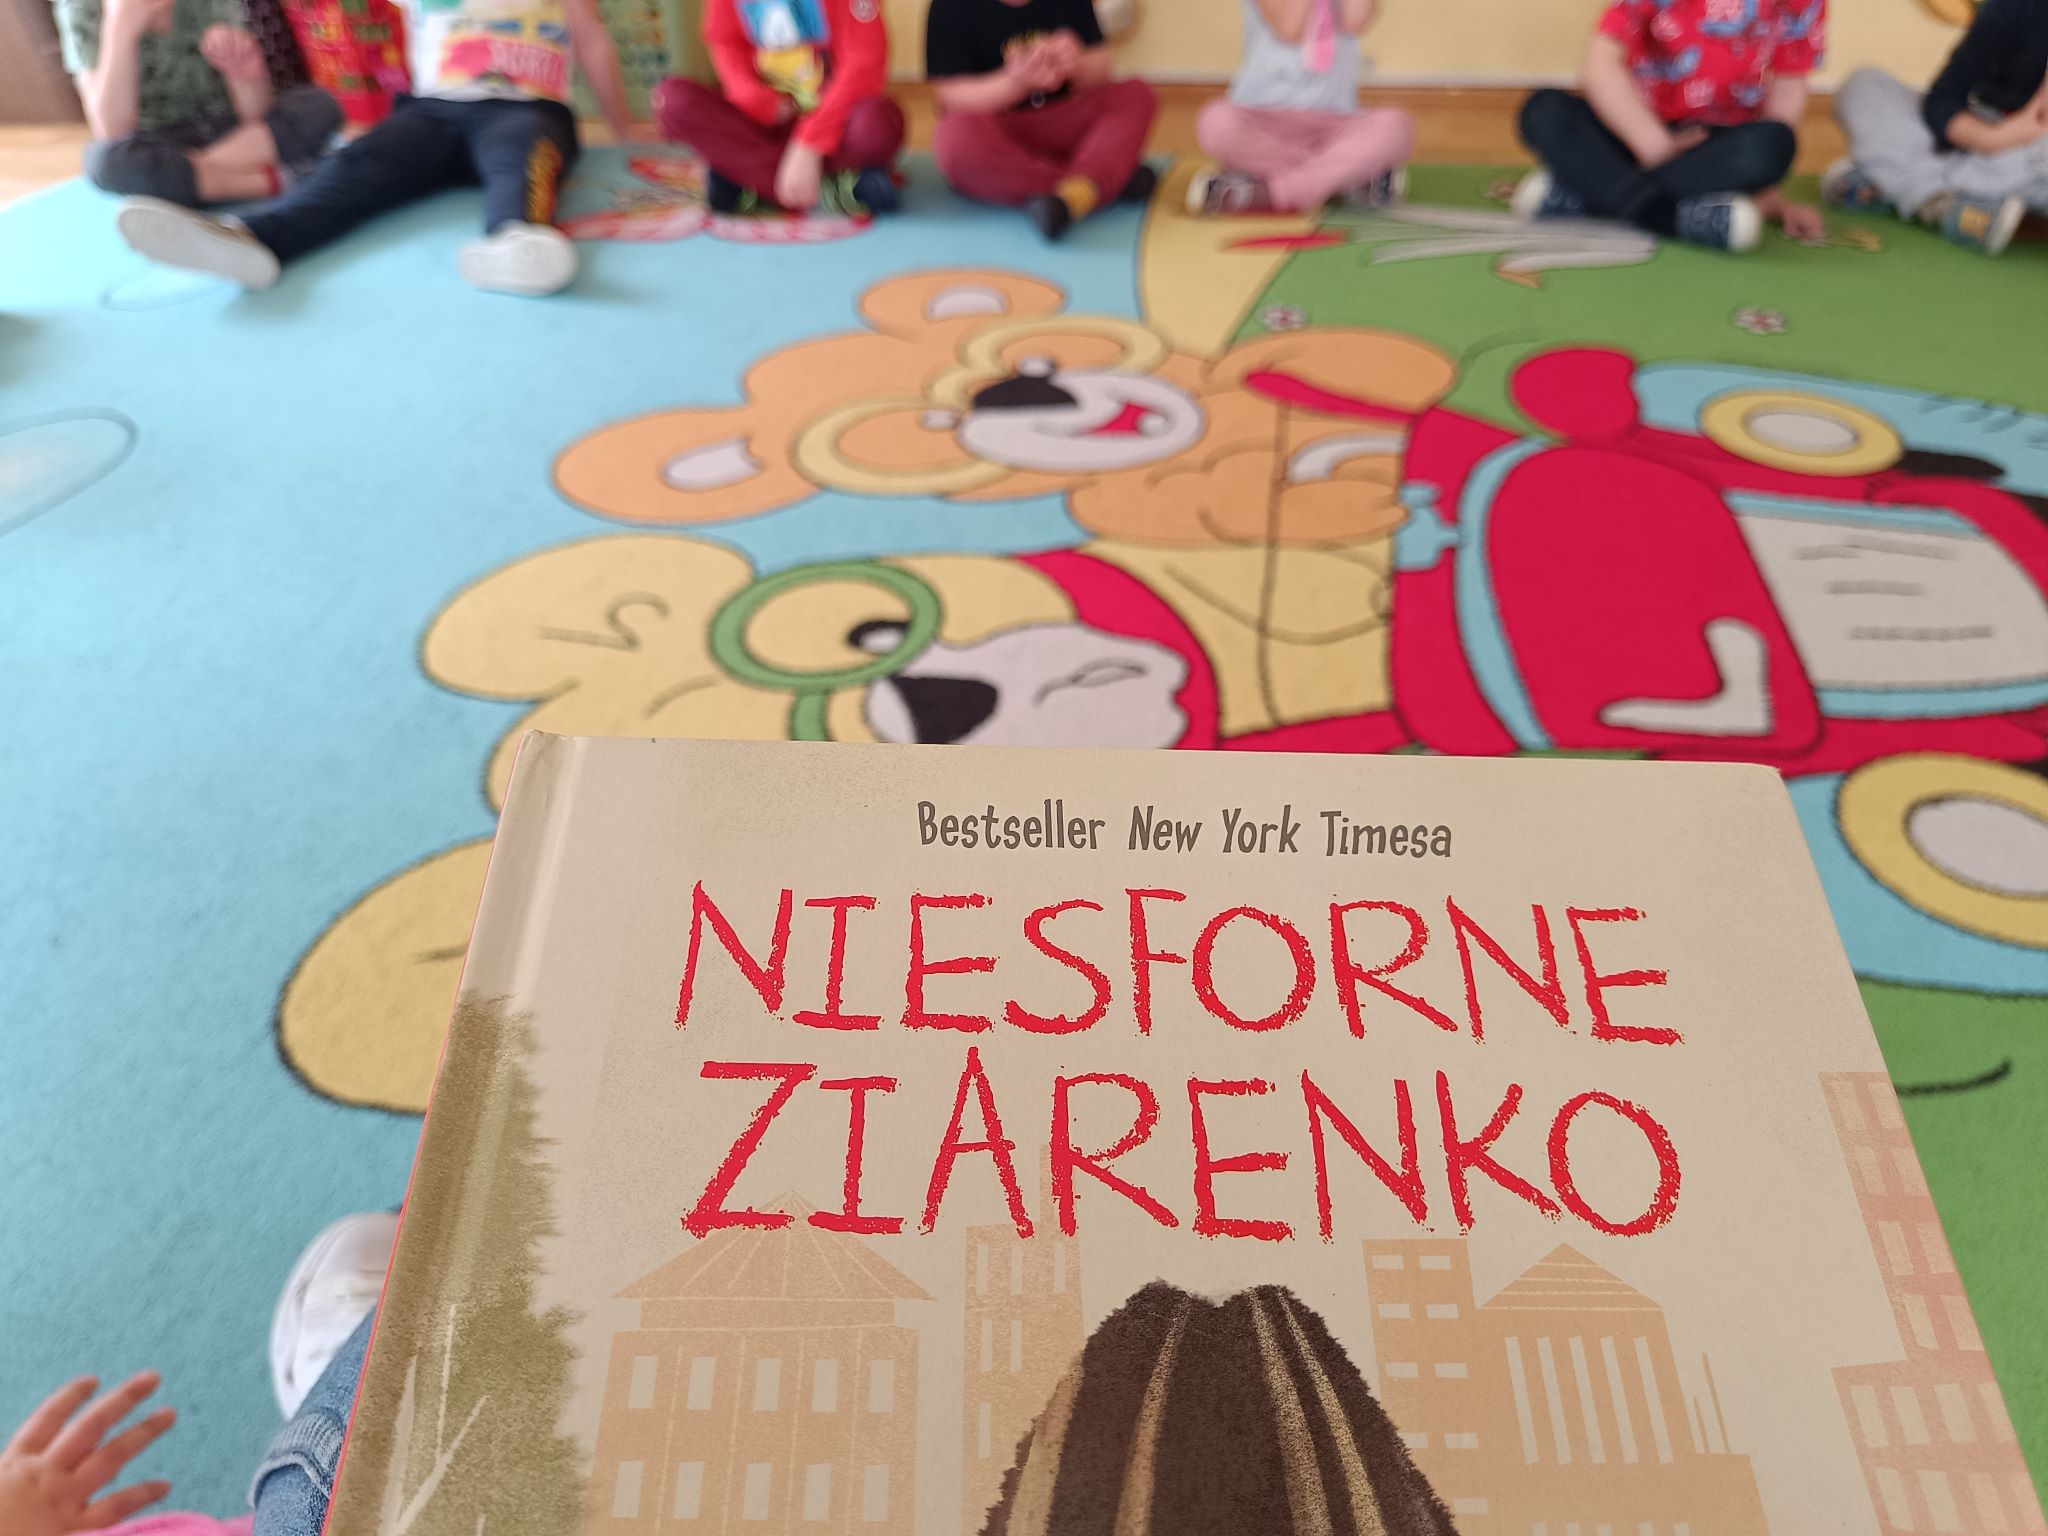 Dzieci siedzące wokół nauczyciela czytającego książkę "Niesforne Ziarenko"